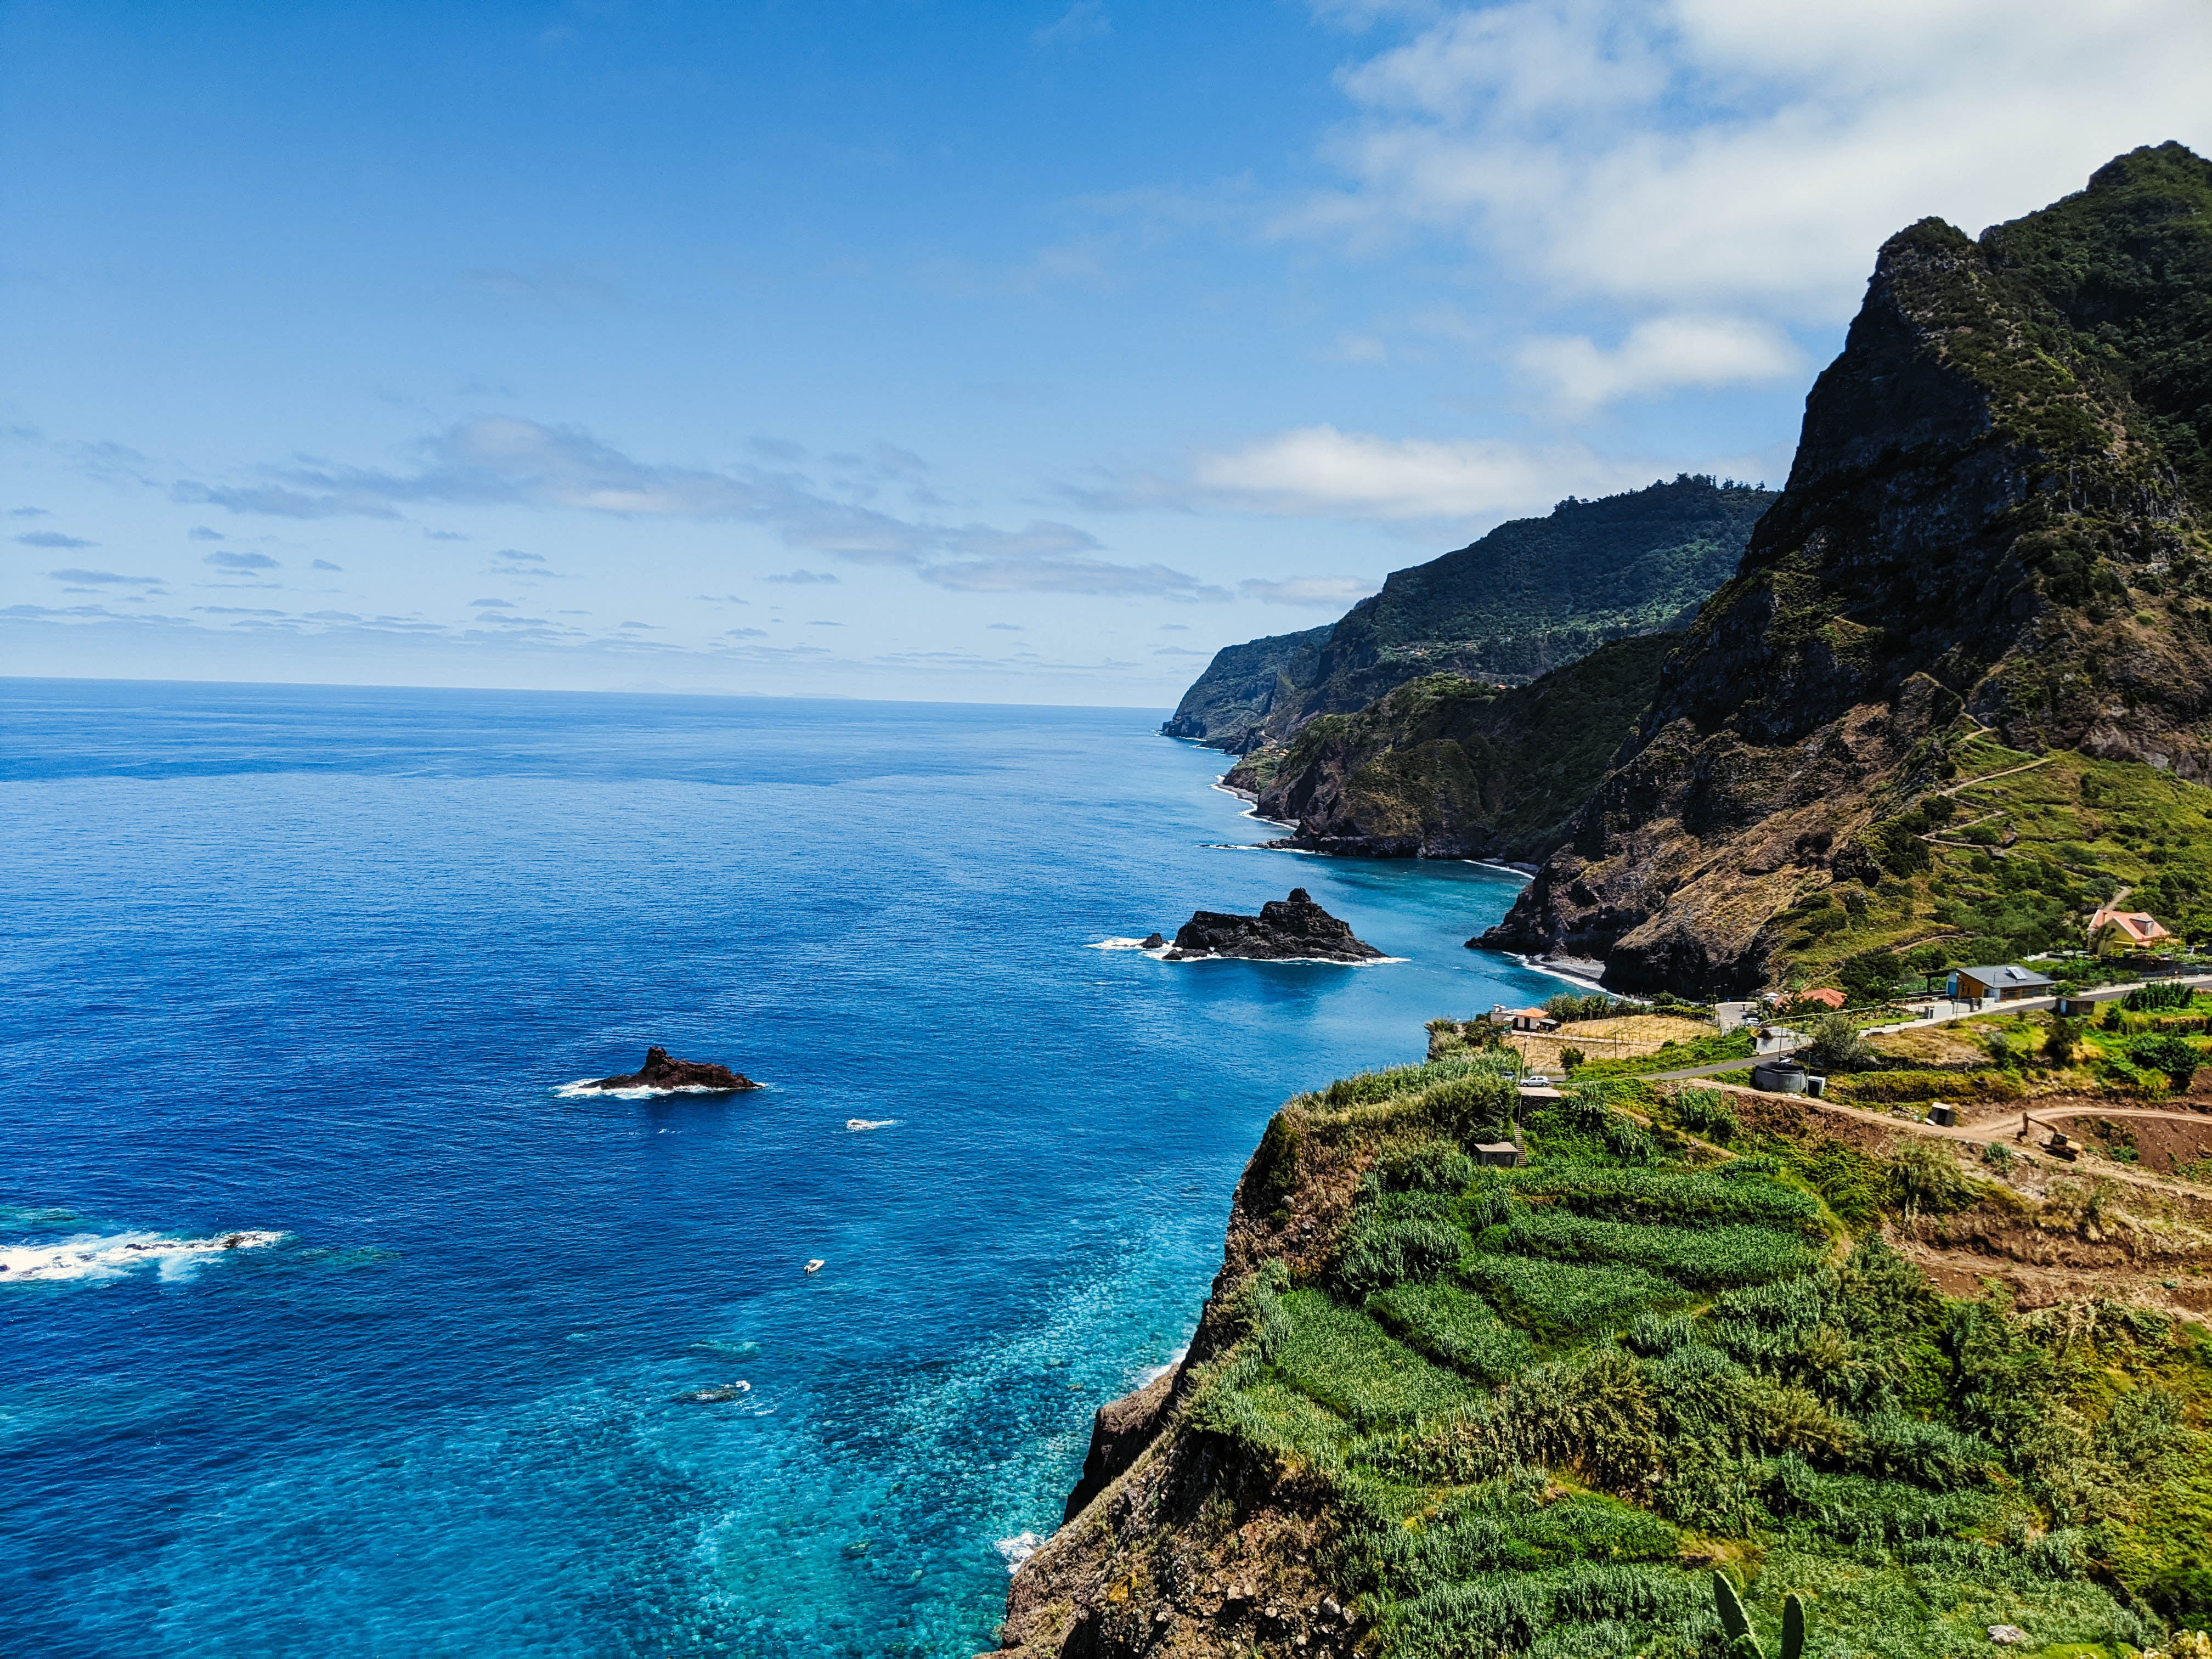 Португальский остров. Мадейра остров. Архипелаг Мадейра, Португалия. Португальский остров Мадейра. Мадера остров Португалии.